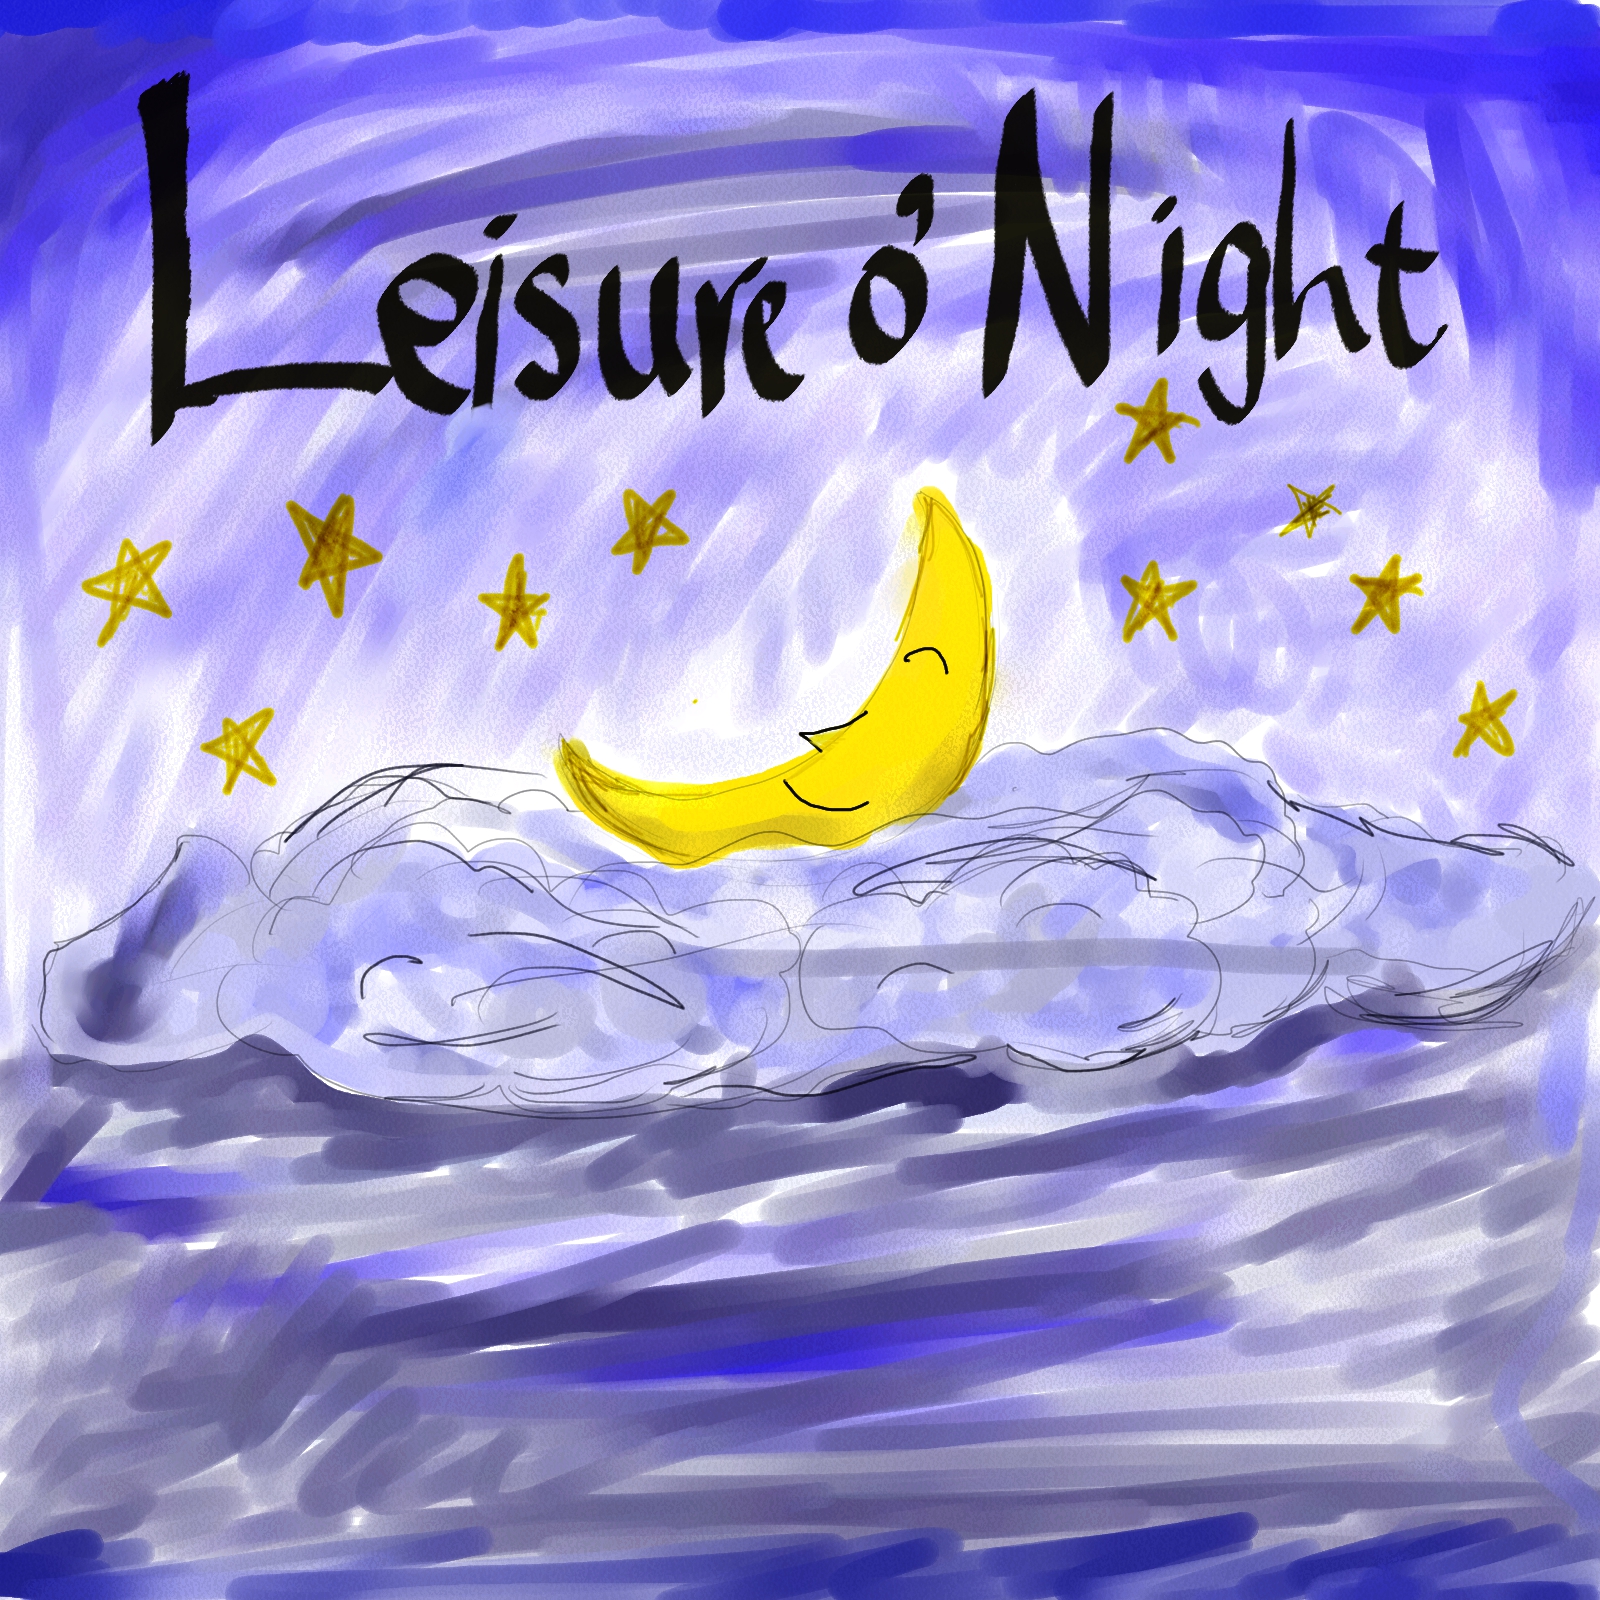 Leisure o' Night